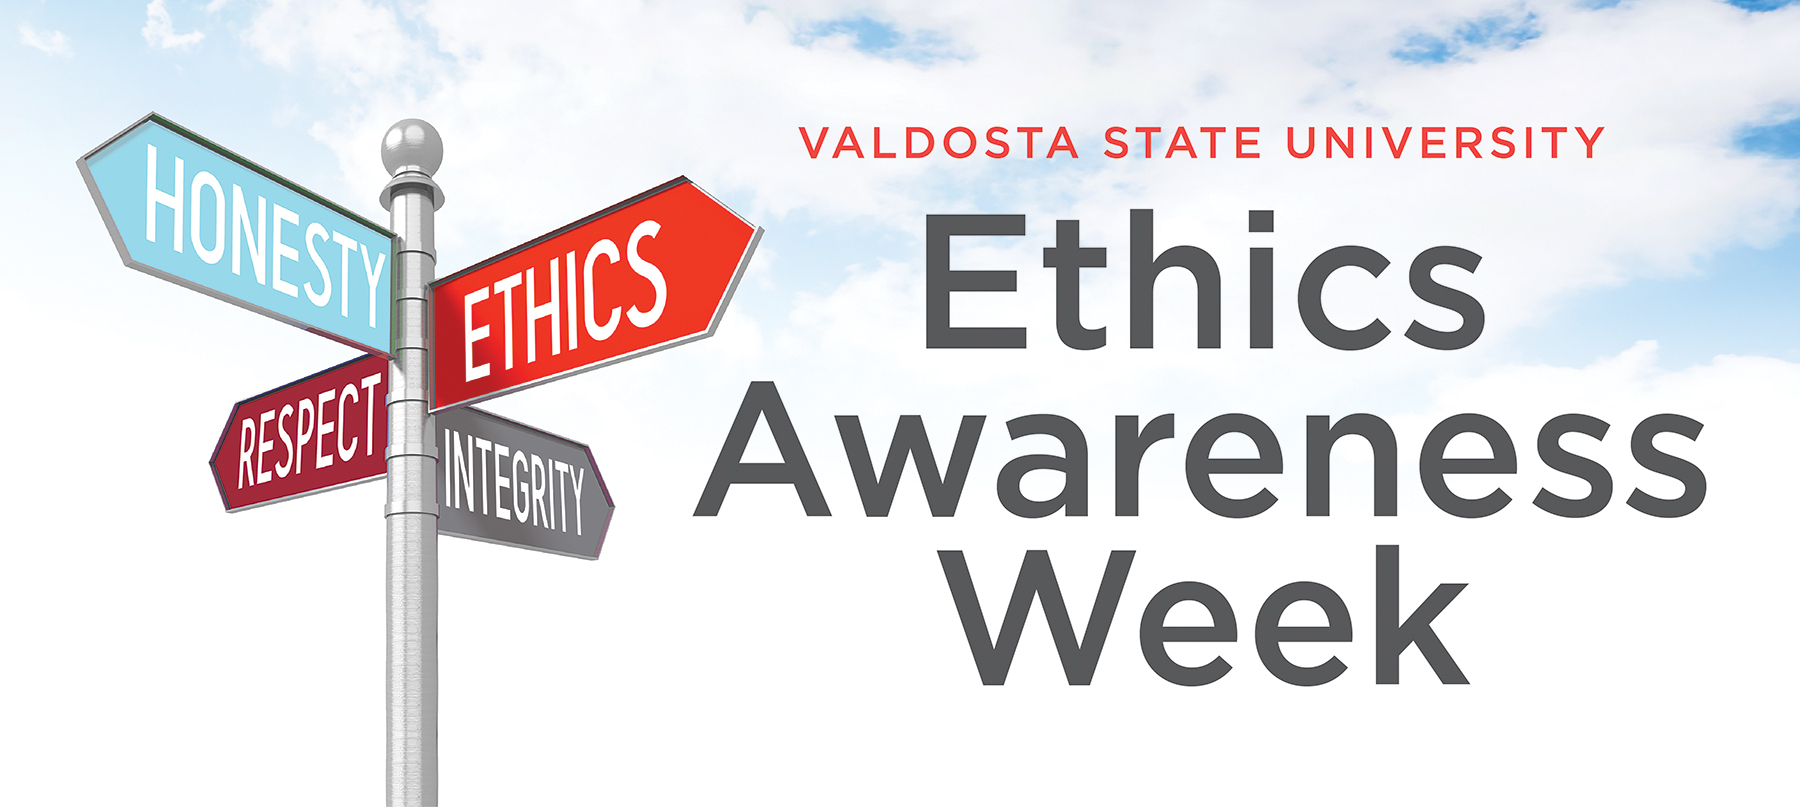 ethics-week.jpg